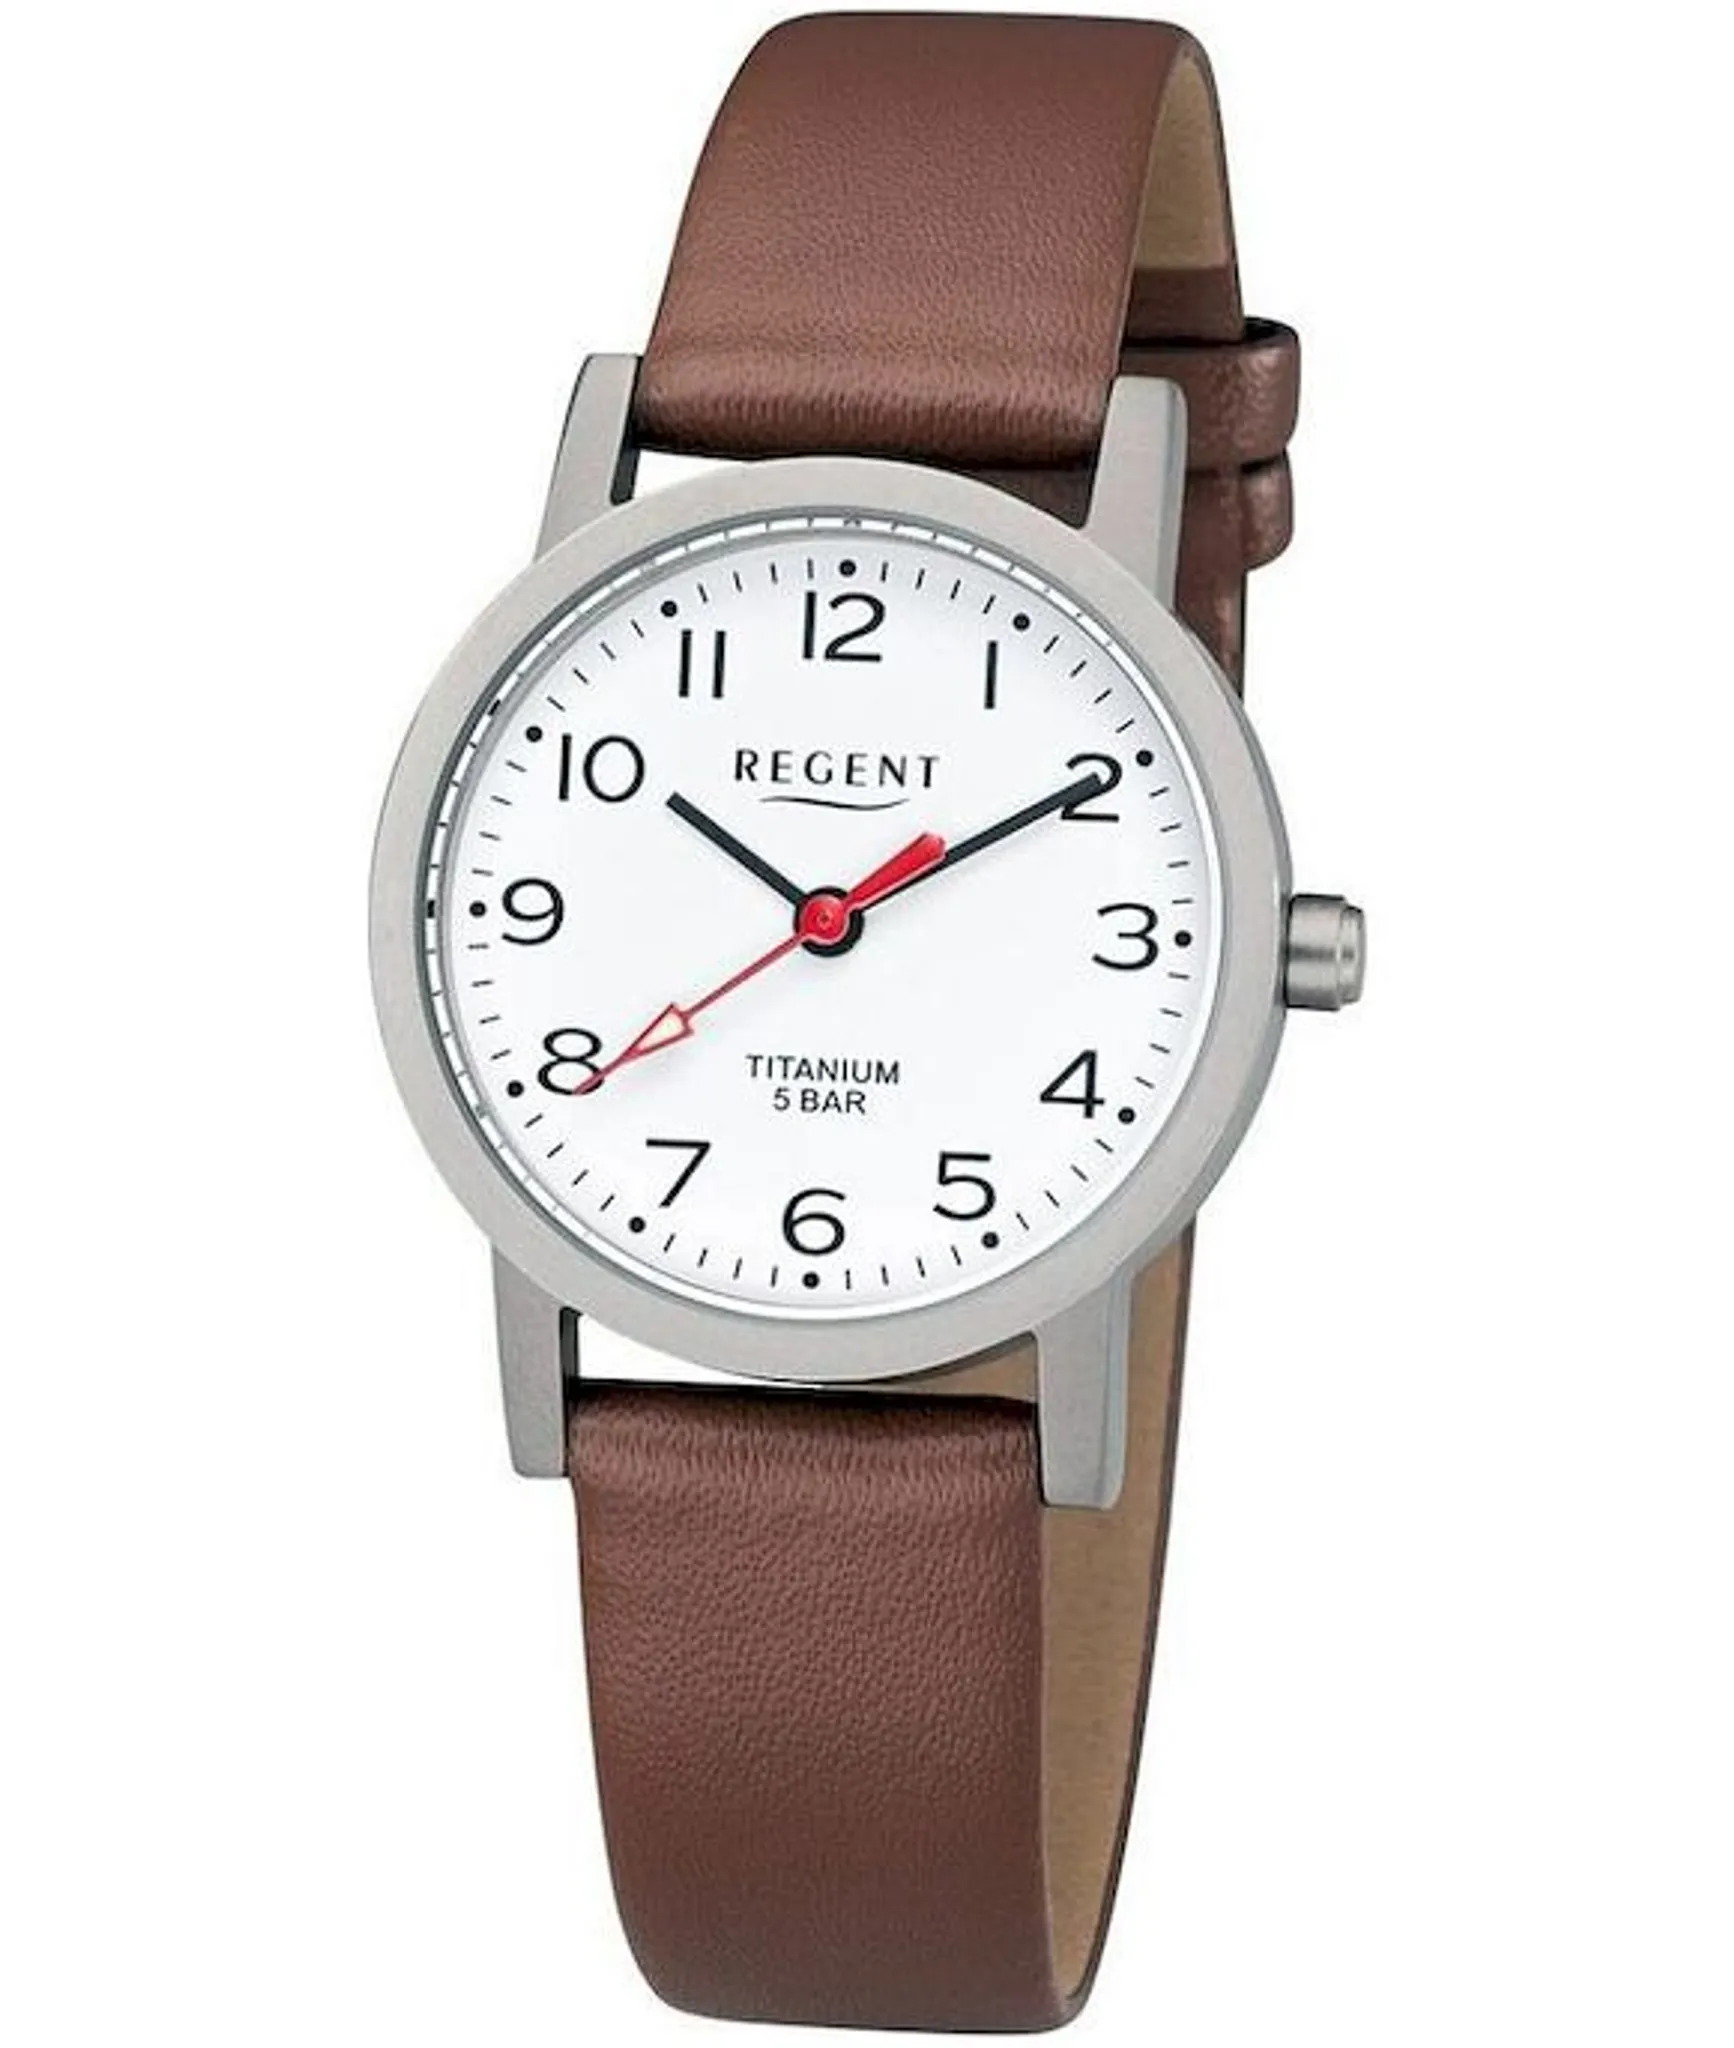 Daniel Klein Premium Damen Silber Uhr weißes Zifferblatt